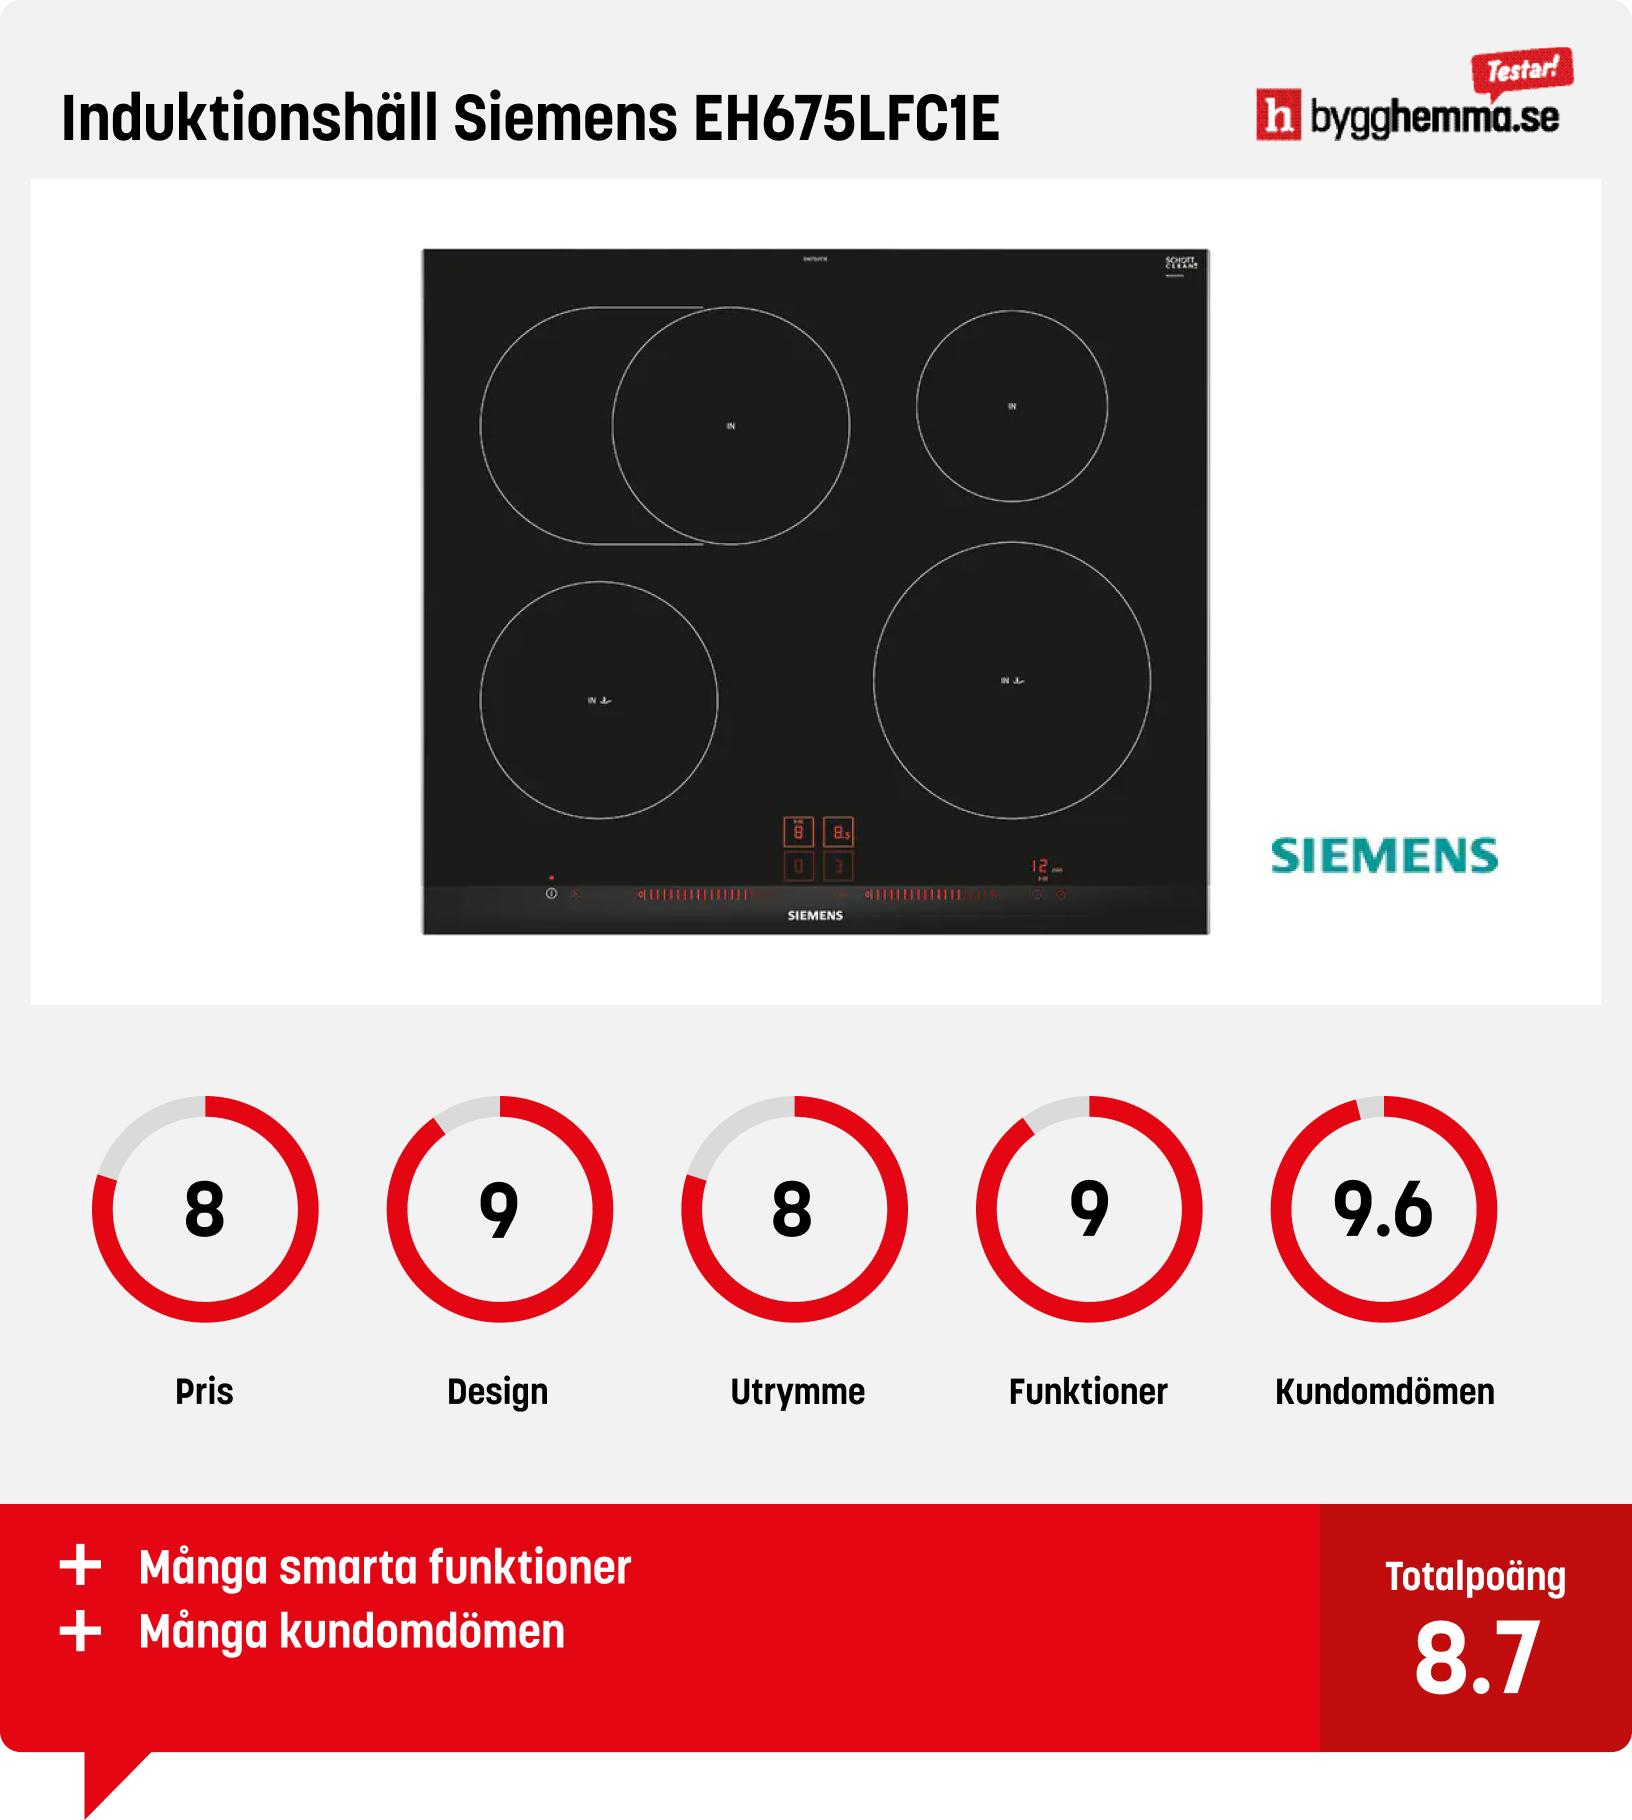 Bäst i test induktionshäll från Siemens